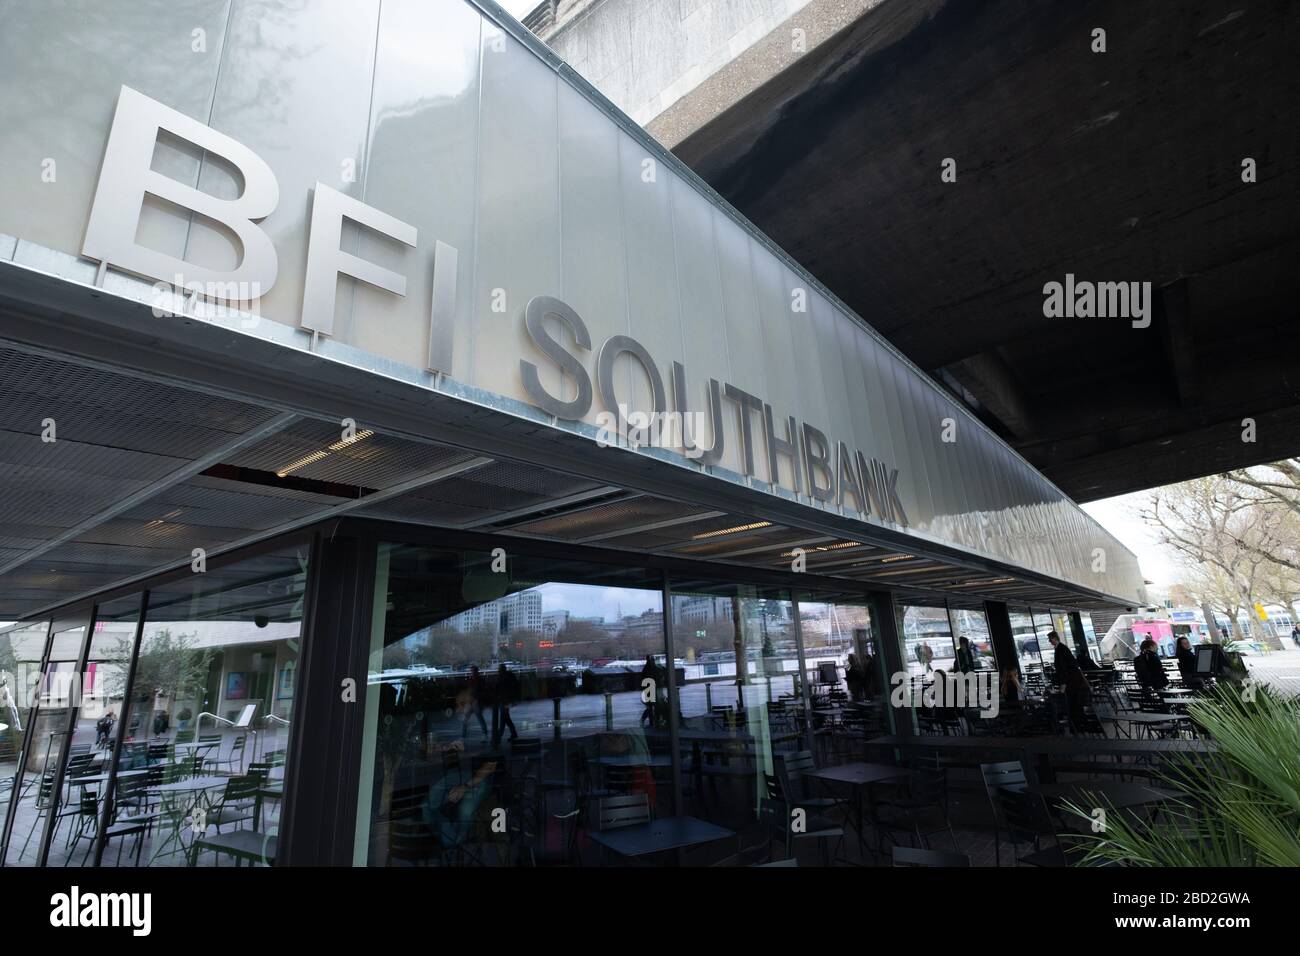 LONDRES- ABRIL de 2019: BFI South Bank Building, una importante casa de cine independiente y británica operada por el British Film Institute Foto de stock